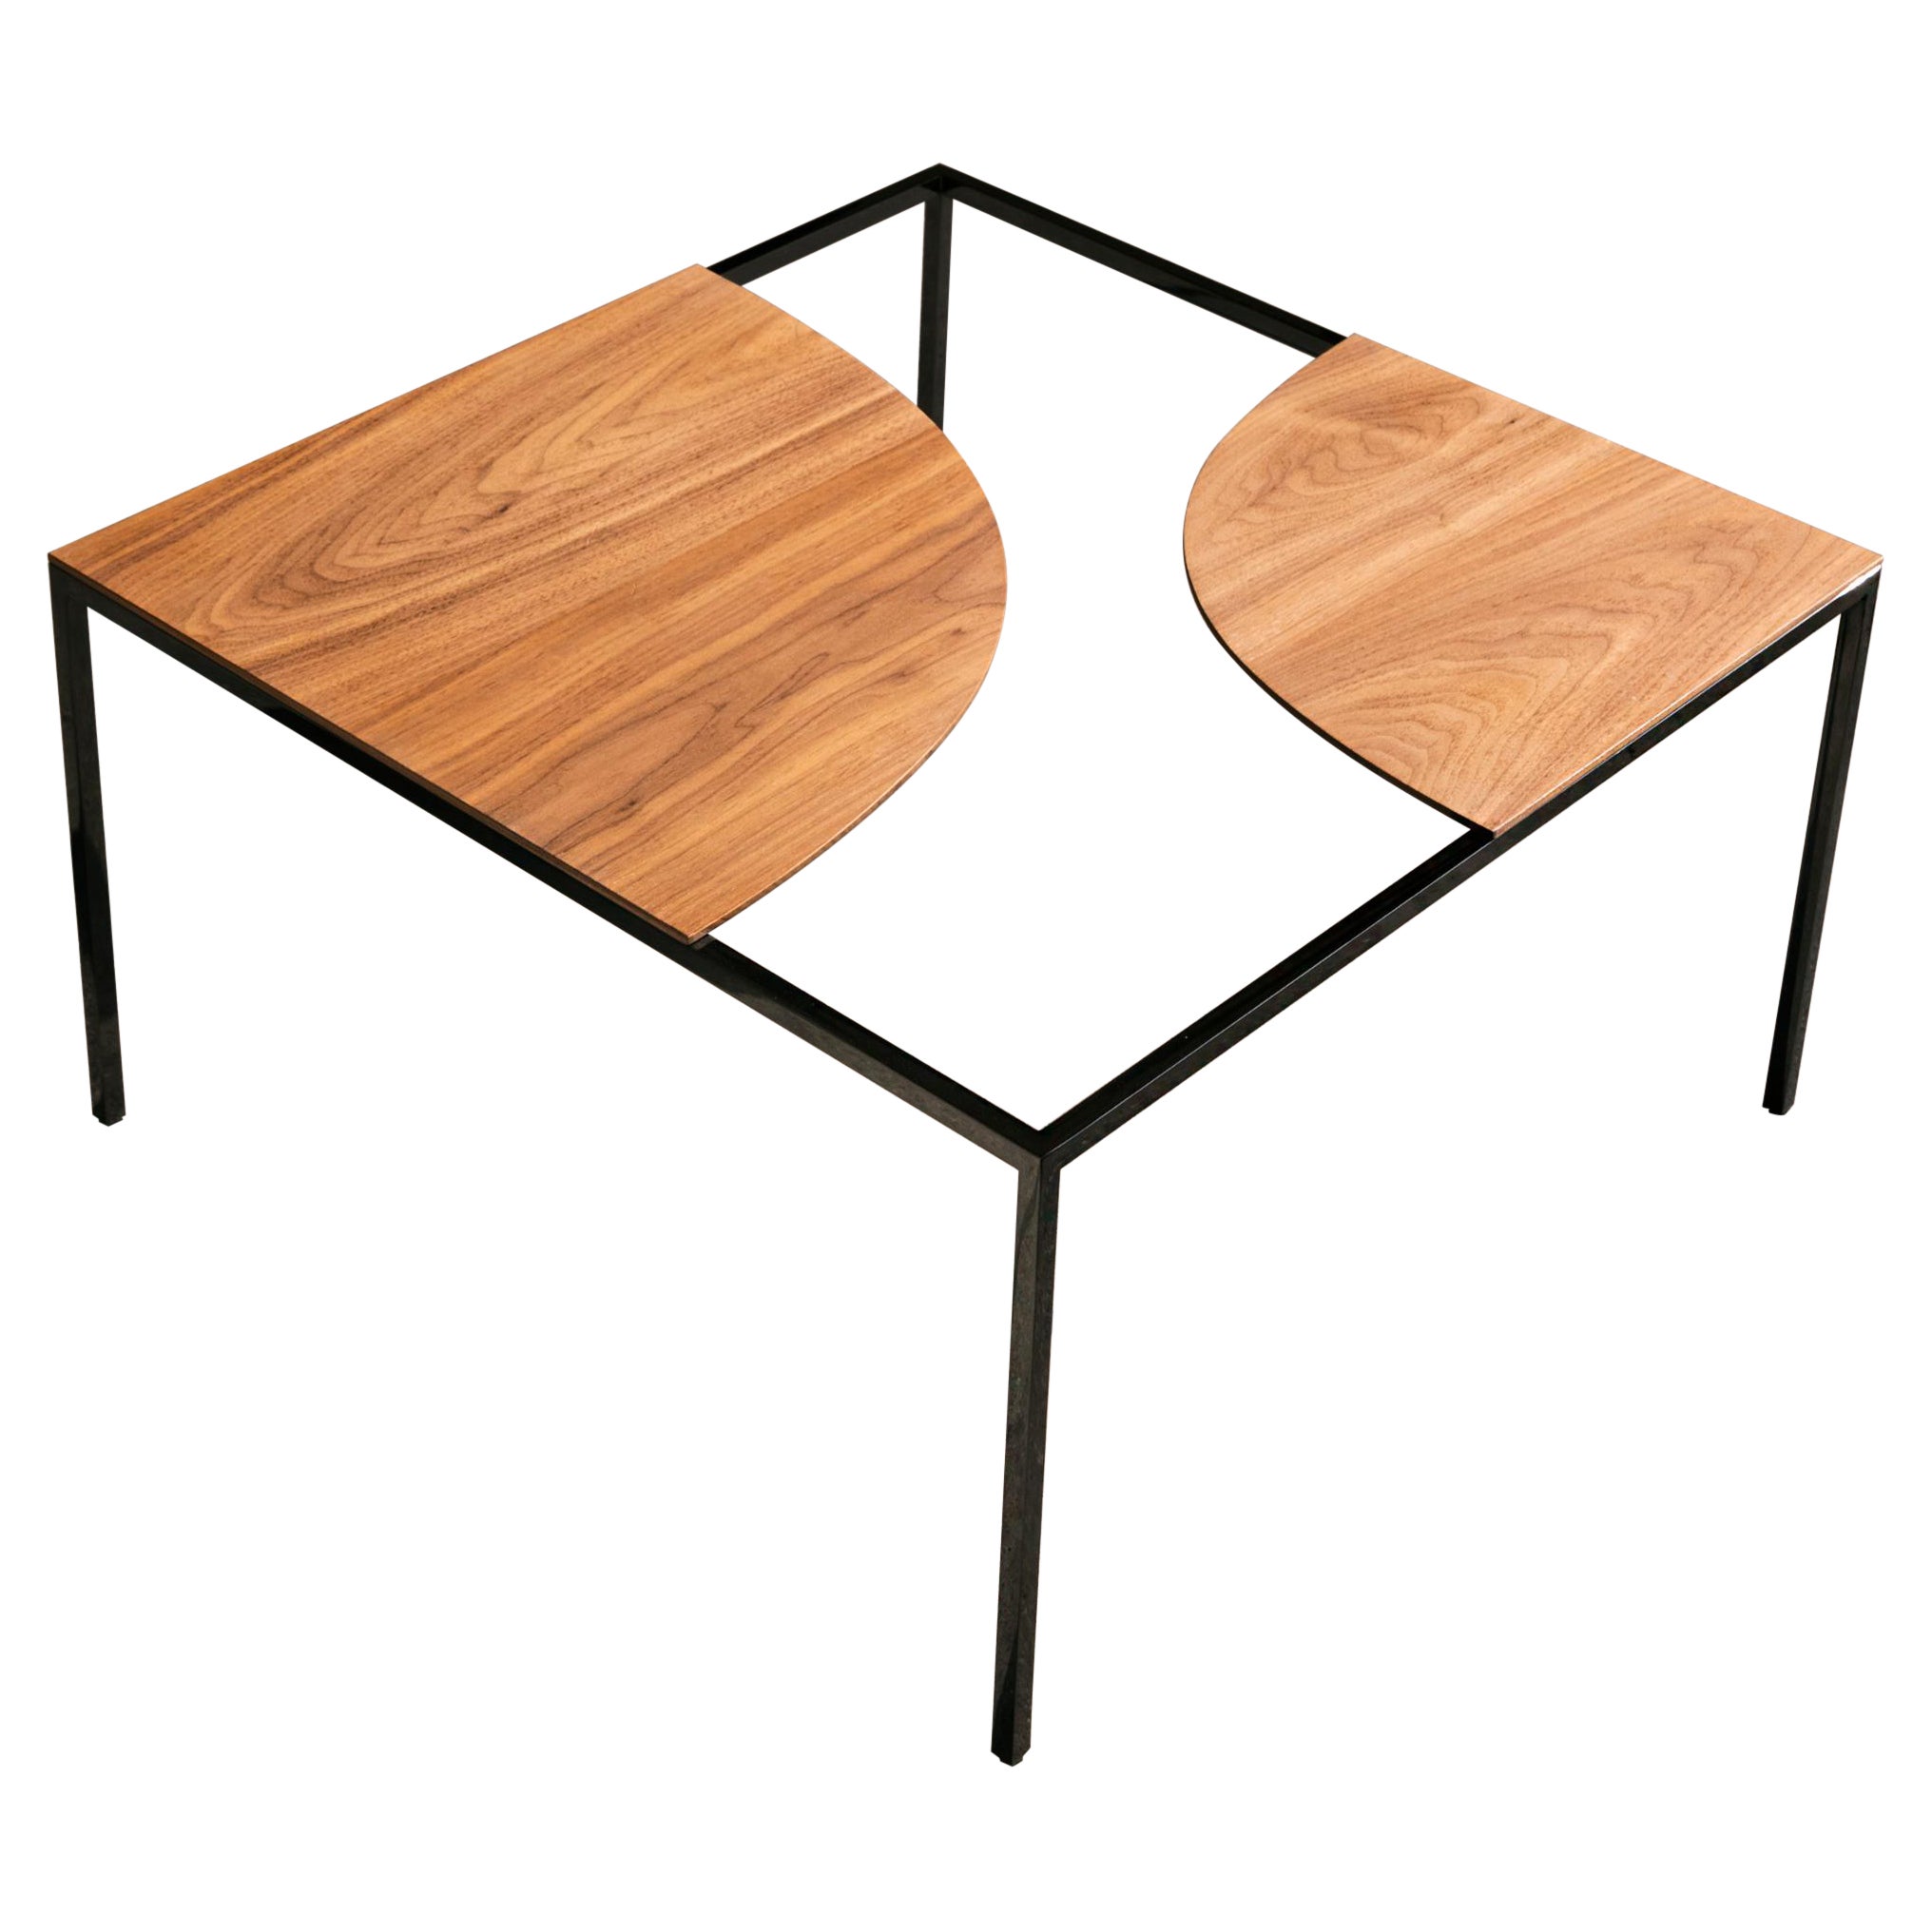 Manufacture-Paris Creek Tisch, entworfen von Nendo